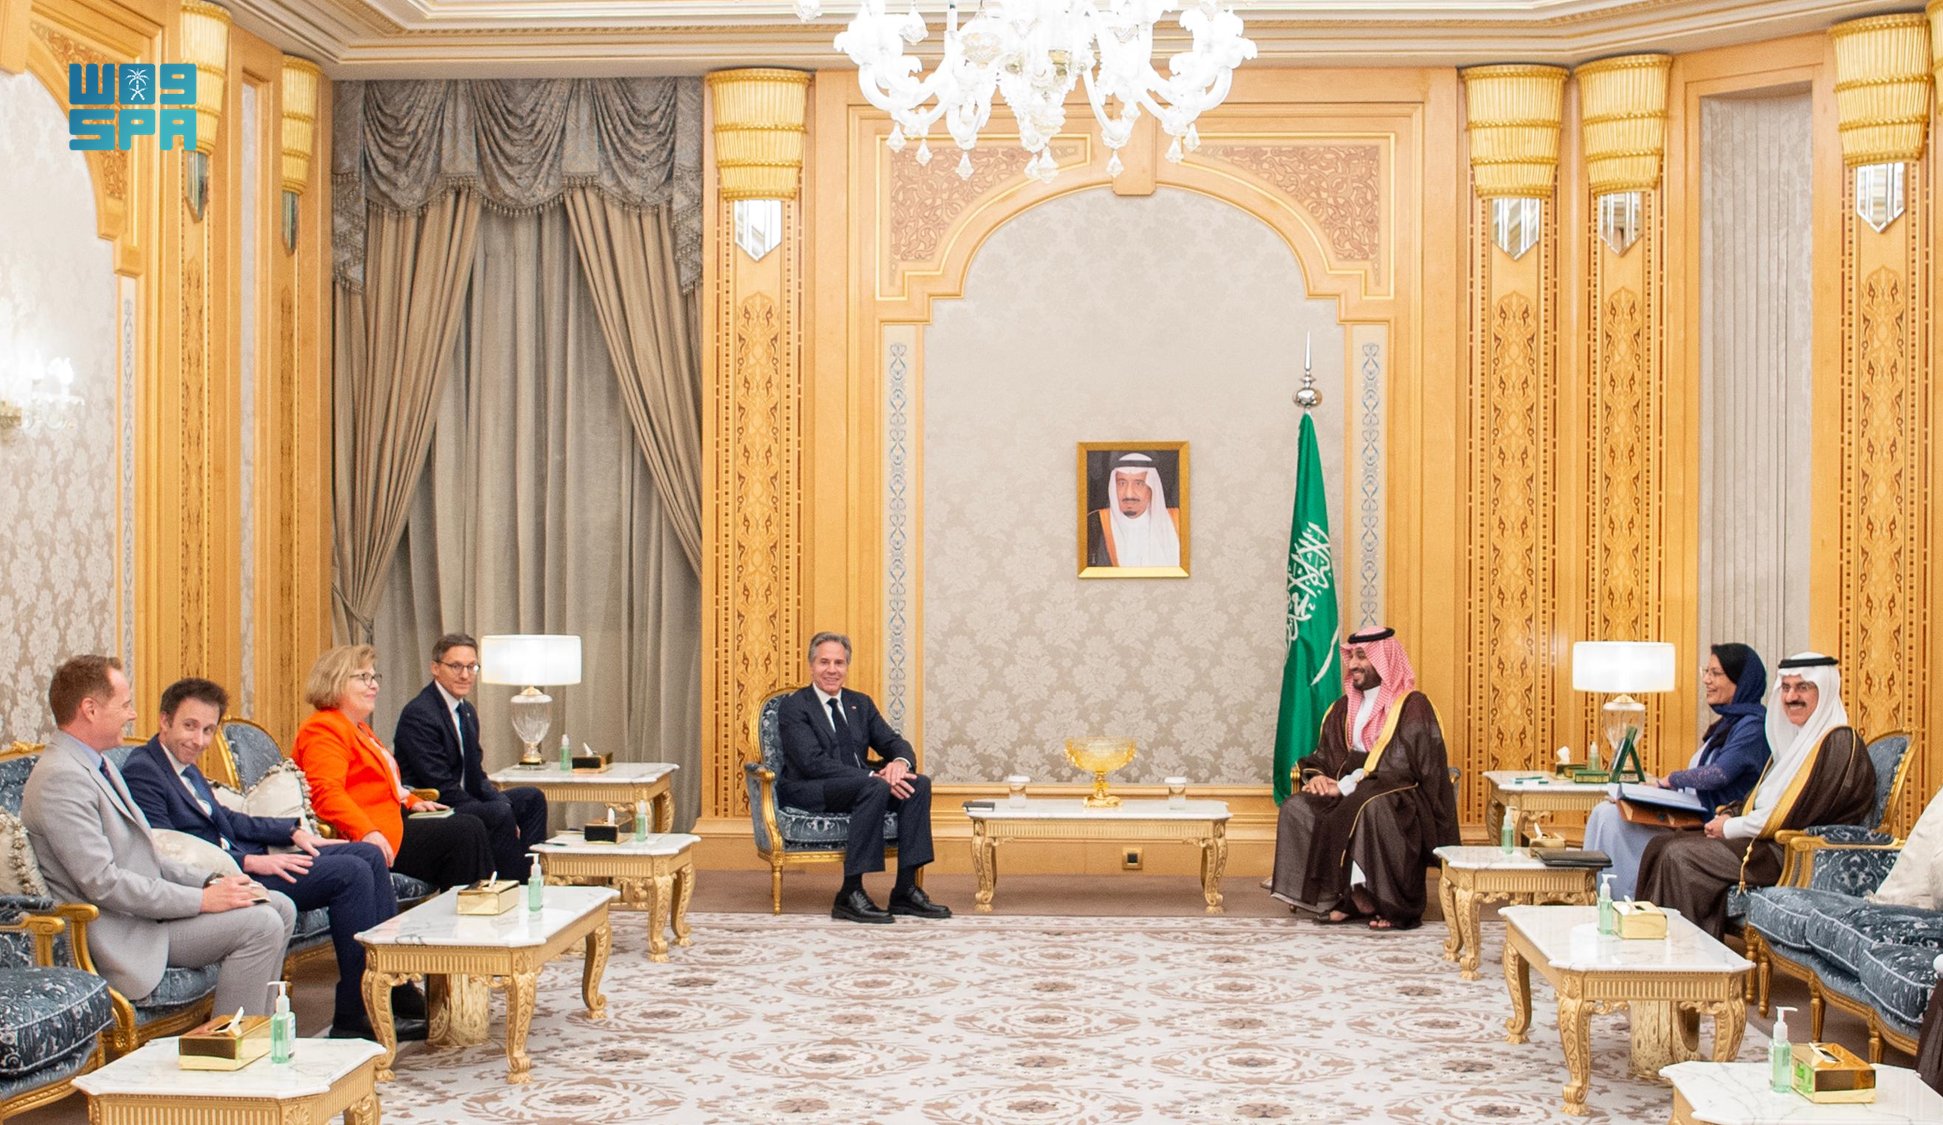 ولي العهد رئيس مجلس الوزراء السعودي يستقبل وزير الخارجية الأمريكي على هامش الاجتماع الخاص للمنتدى الاقتصاد العالمي بالرياض